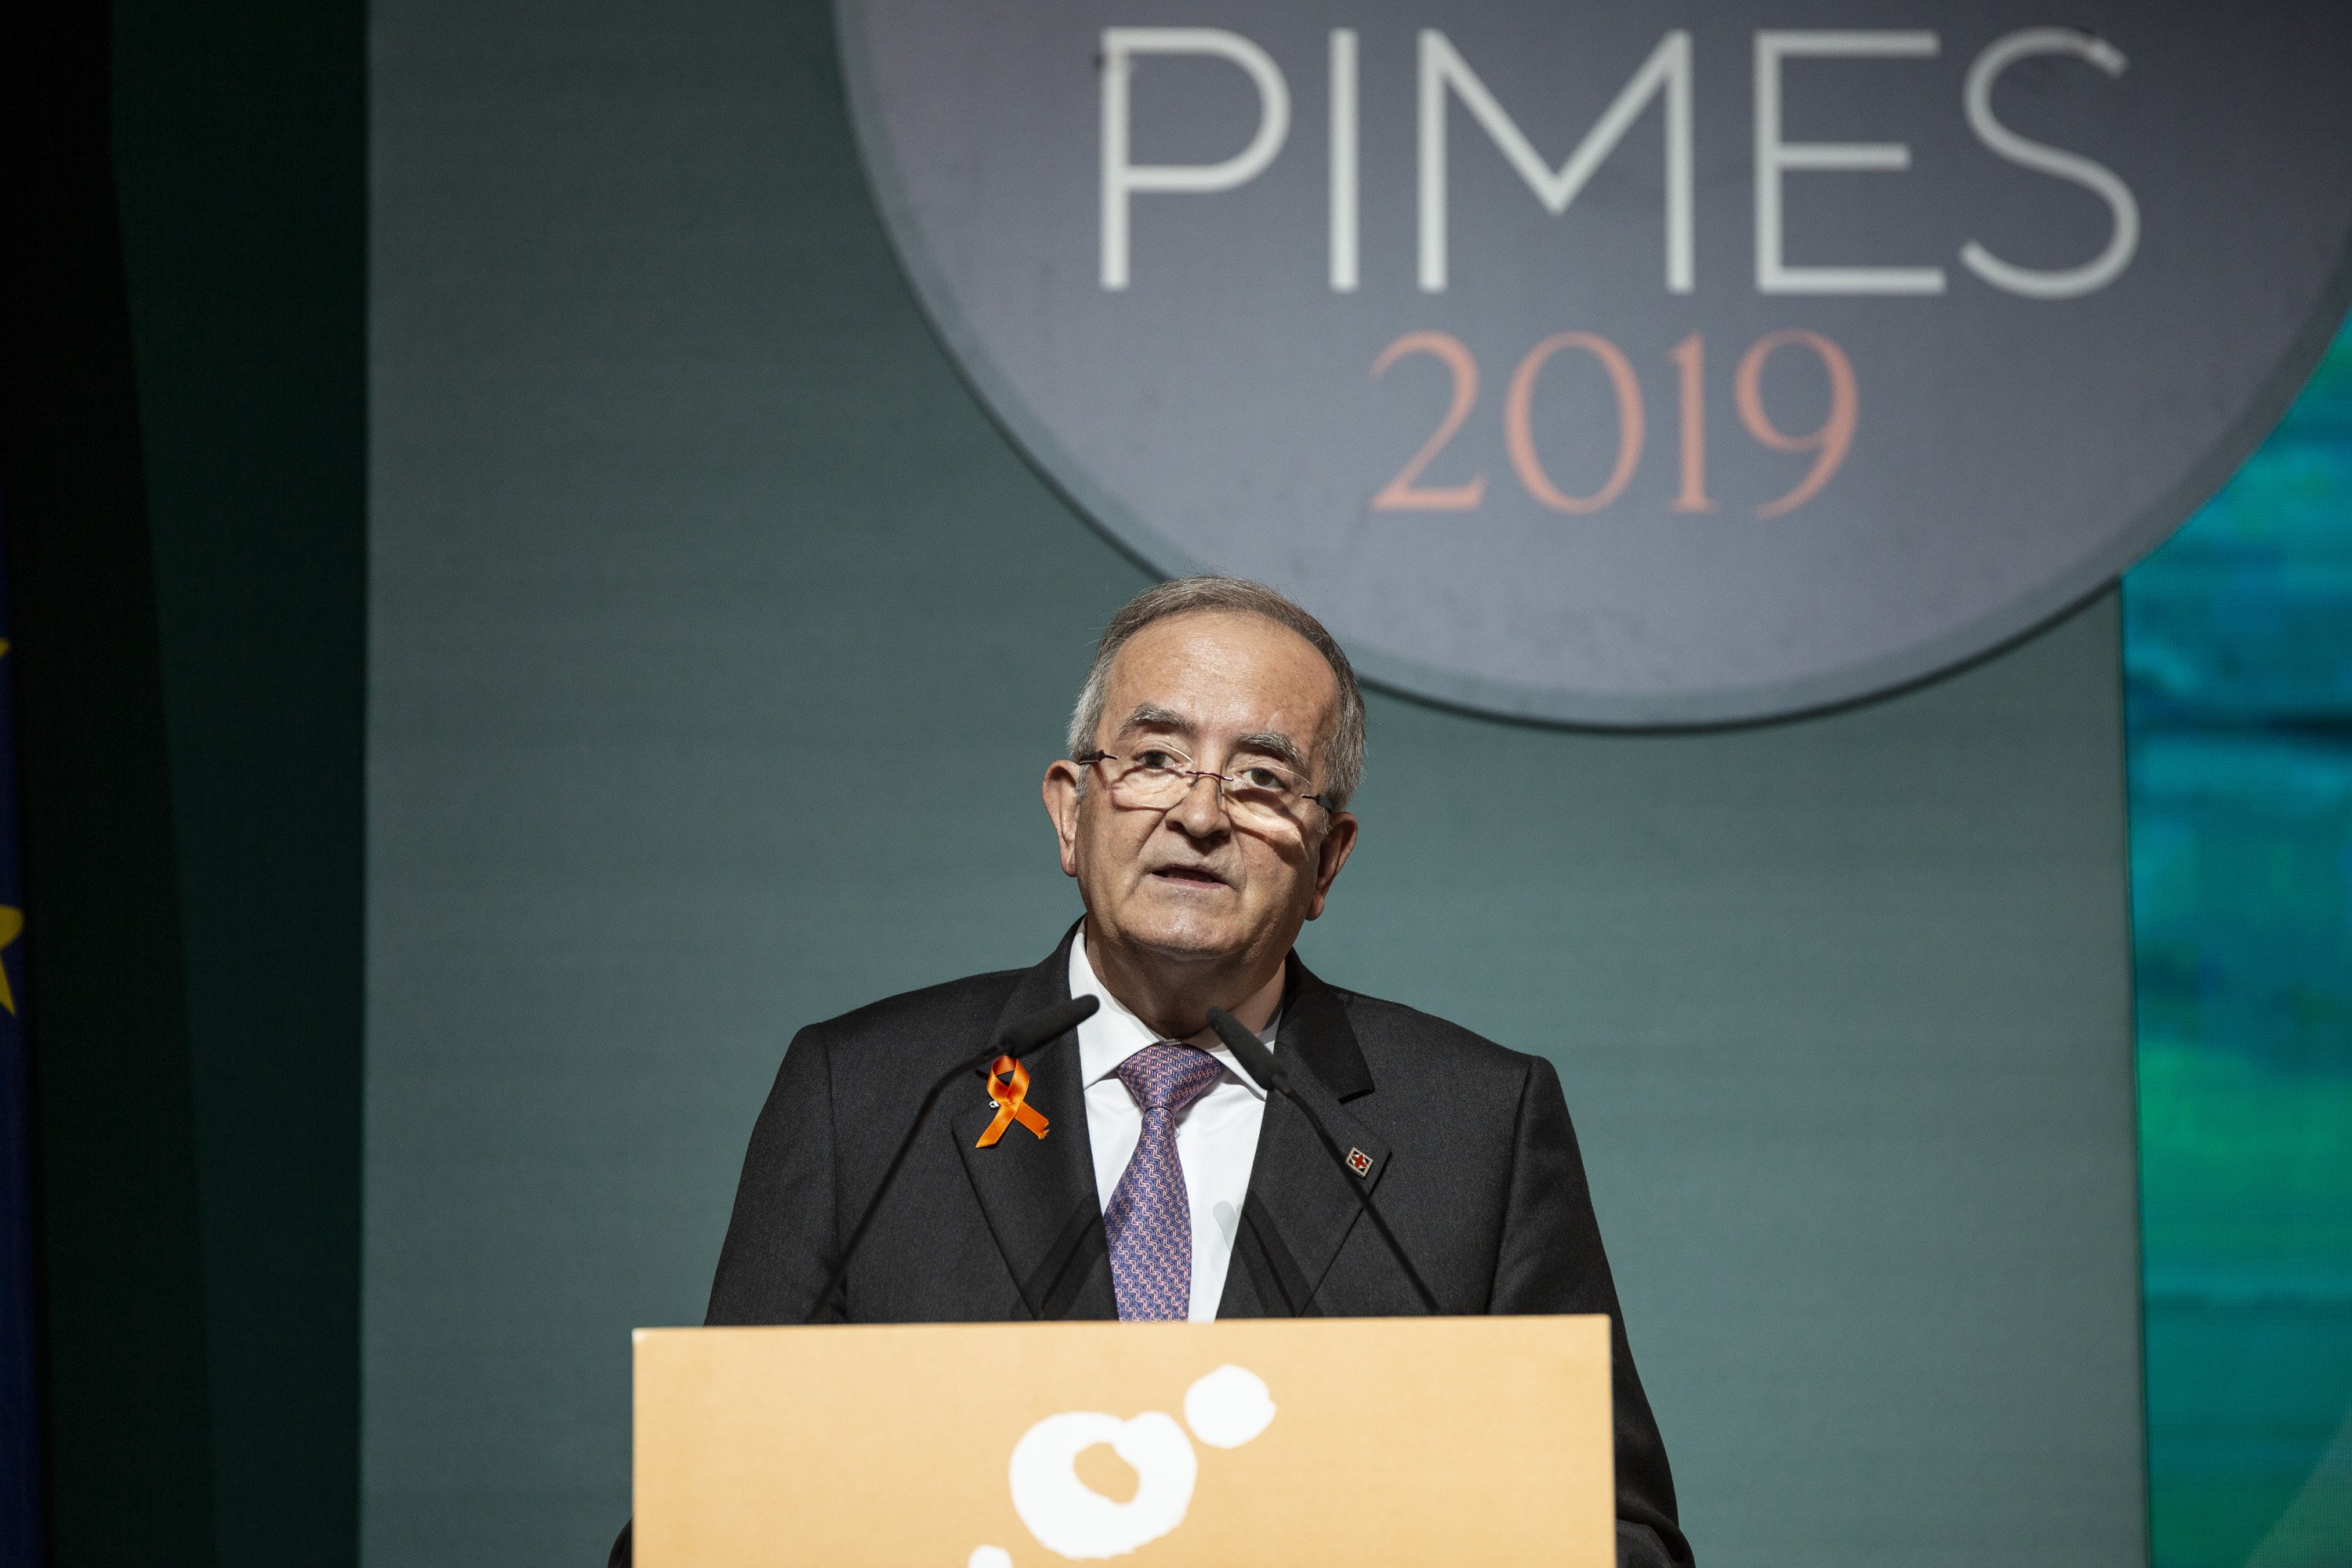 Pimec critica "la desproporció de la sentència" i demana una solució política